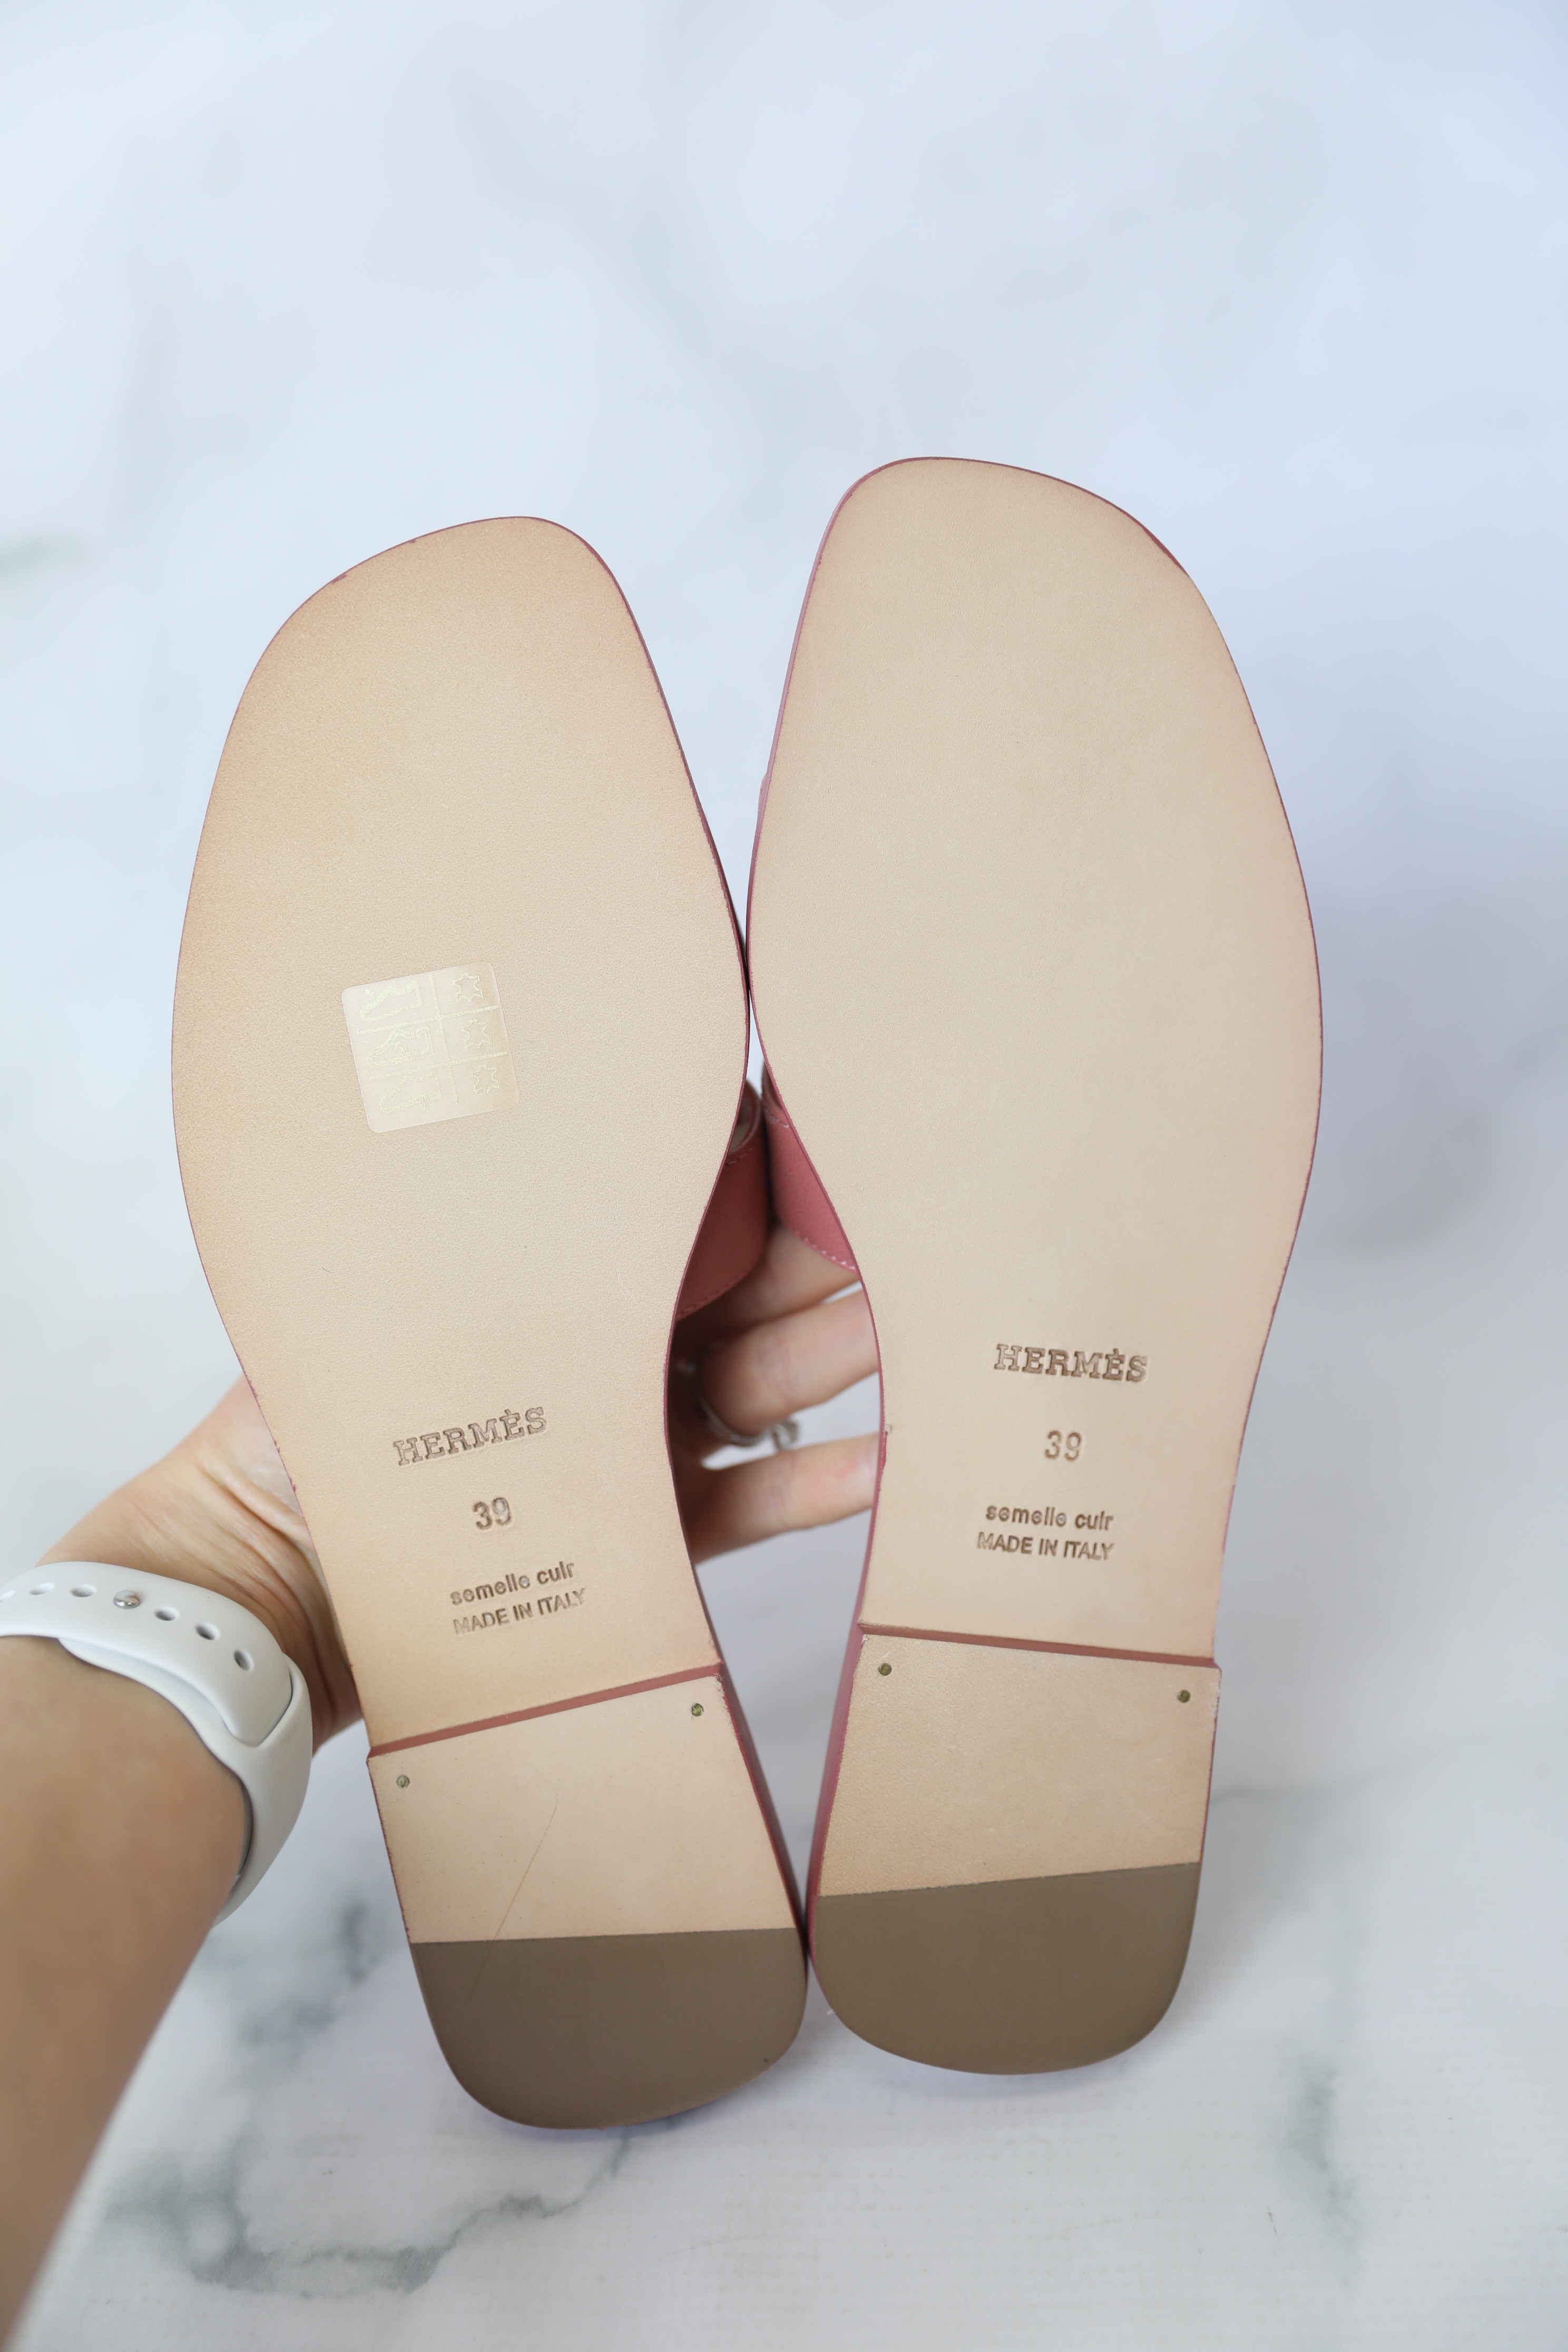 Hermes Oran Sandals Vert Electrique Suede 38 – Madison Avenue Couture